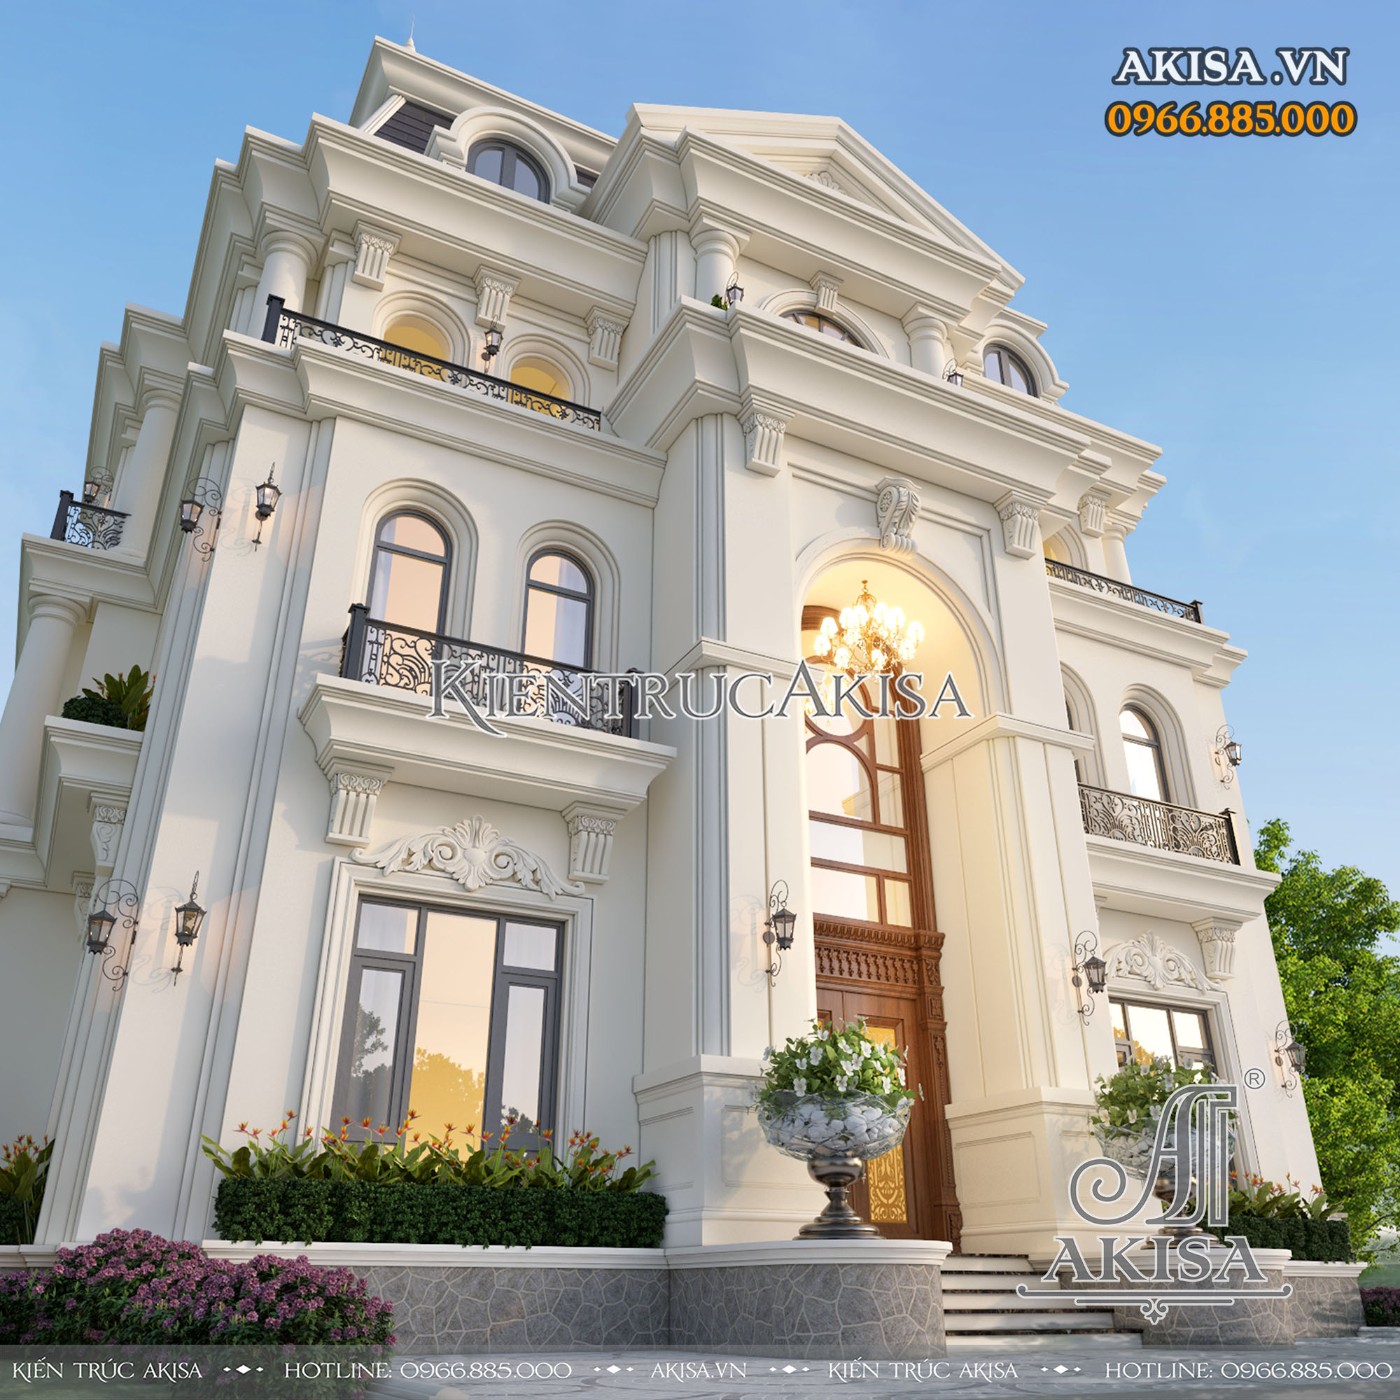 Thiết kế sảnh chính vô cùng sang trọng và bề thế của ngôi nhà biệt thự 3 tầng phong cách tân cổ điển châu Âu